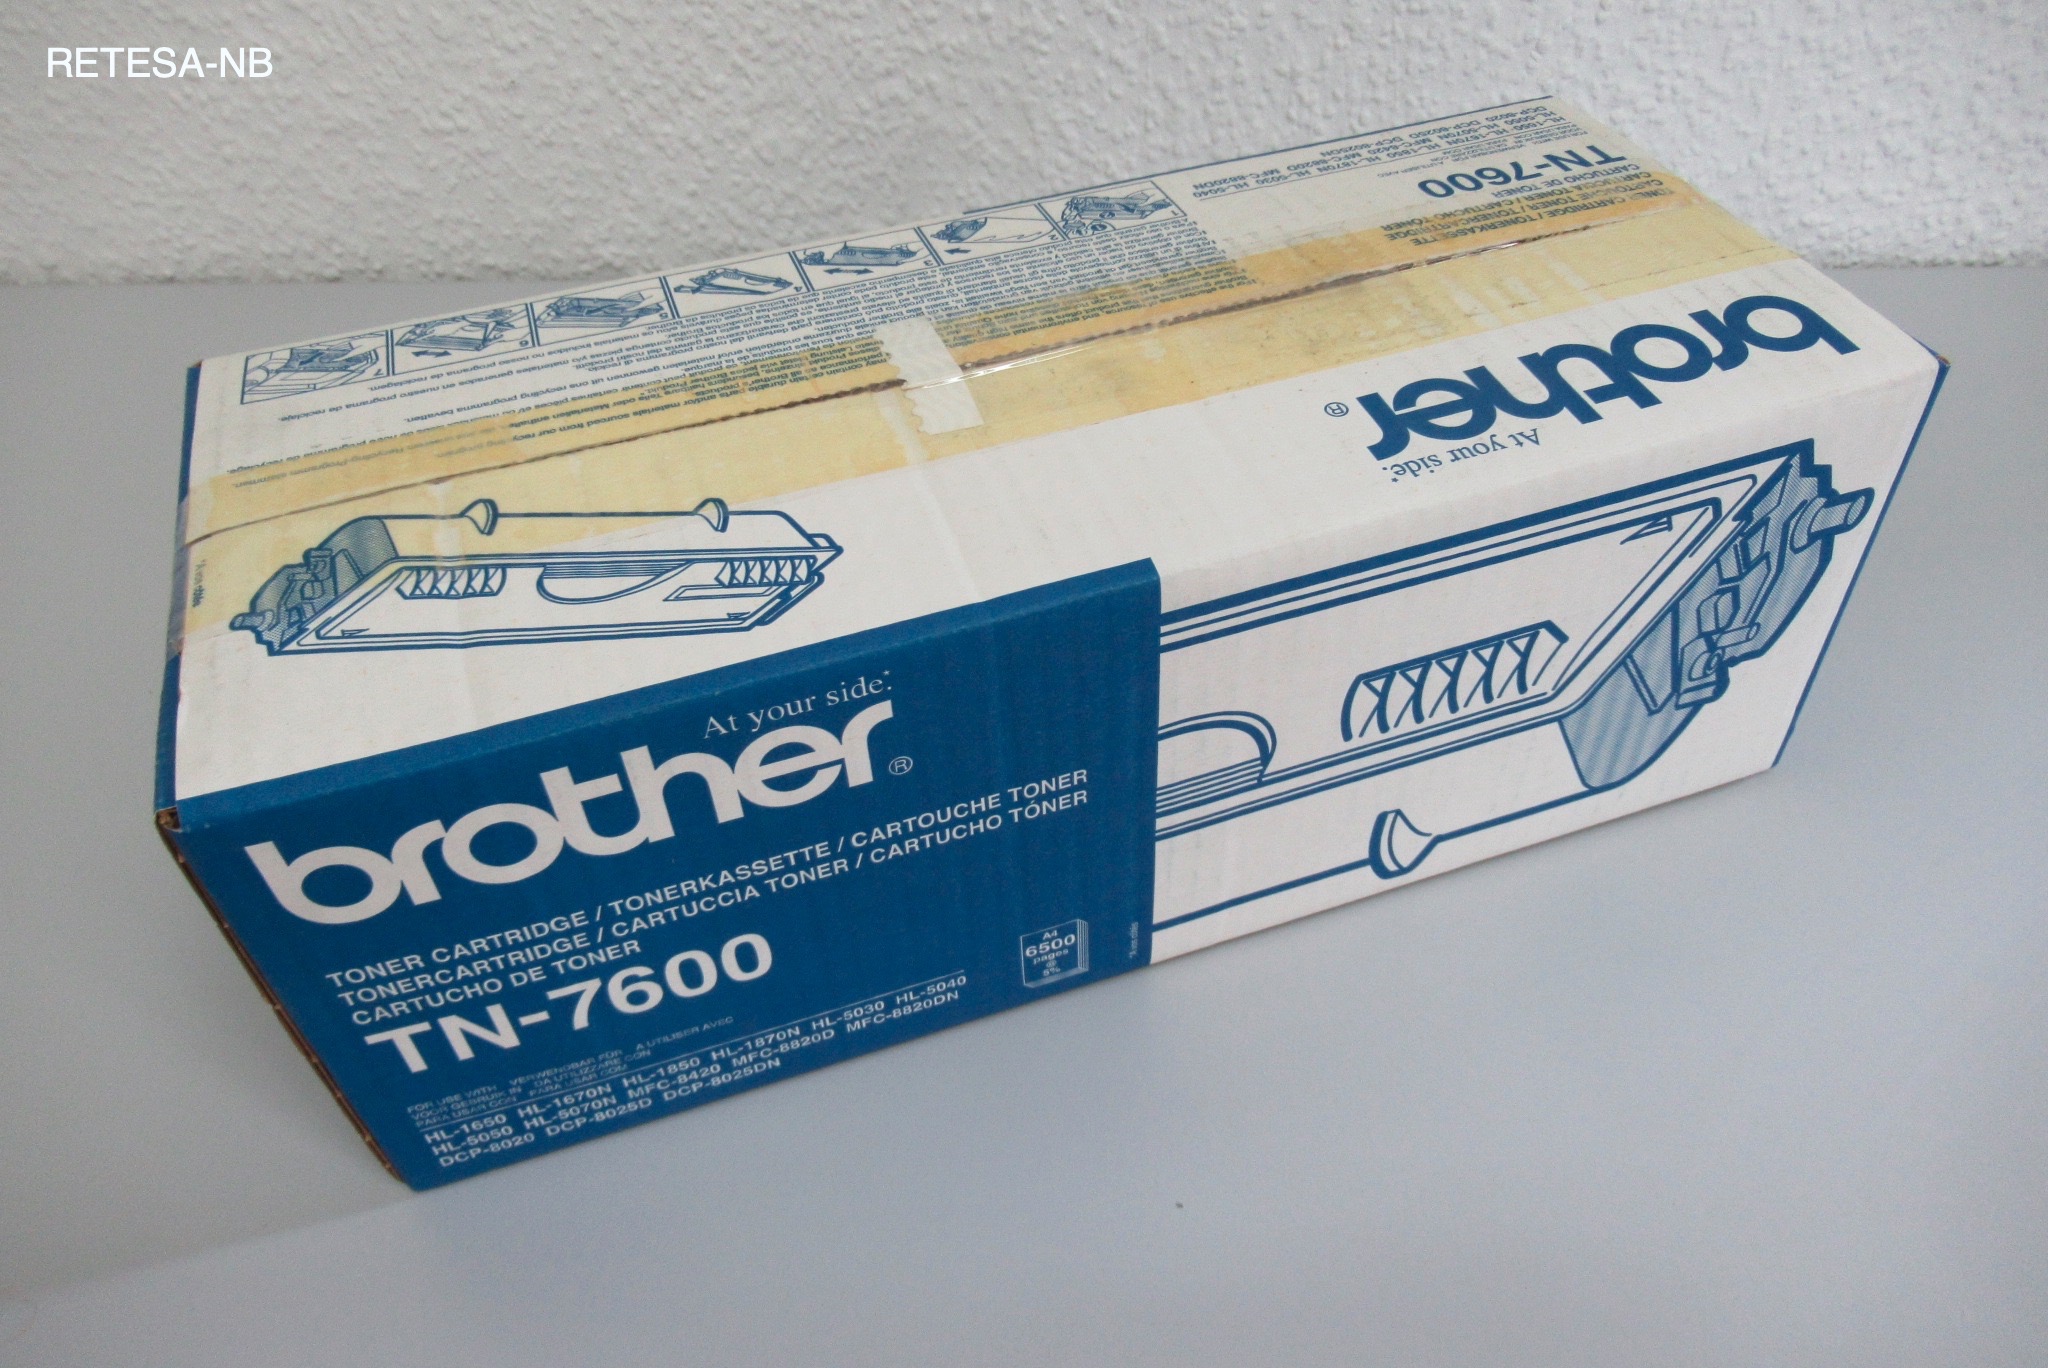 BROTHER Toner TN-7600 für HL-1650/-1850/N/5040 u.a.